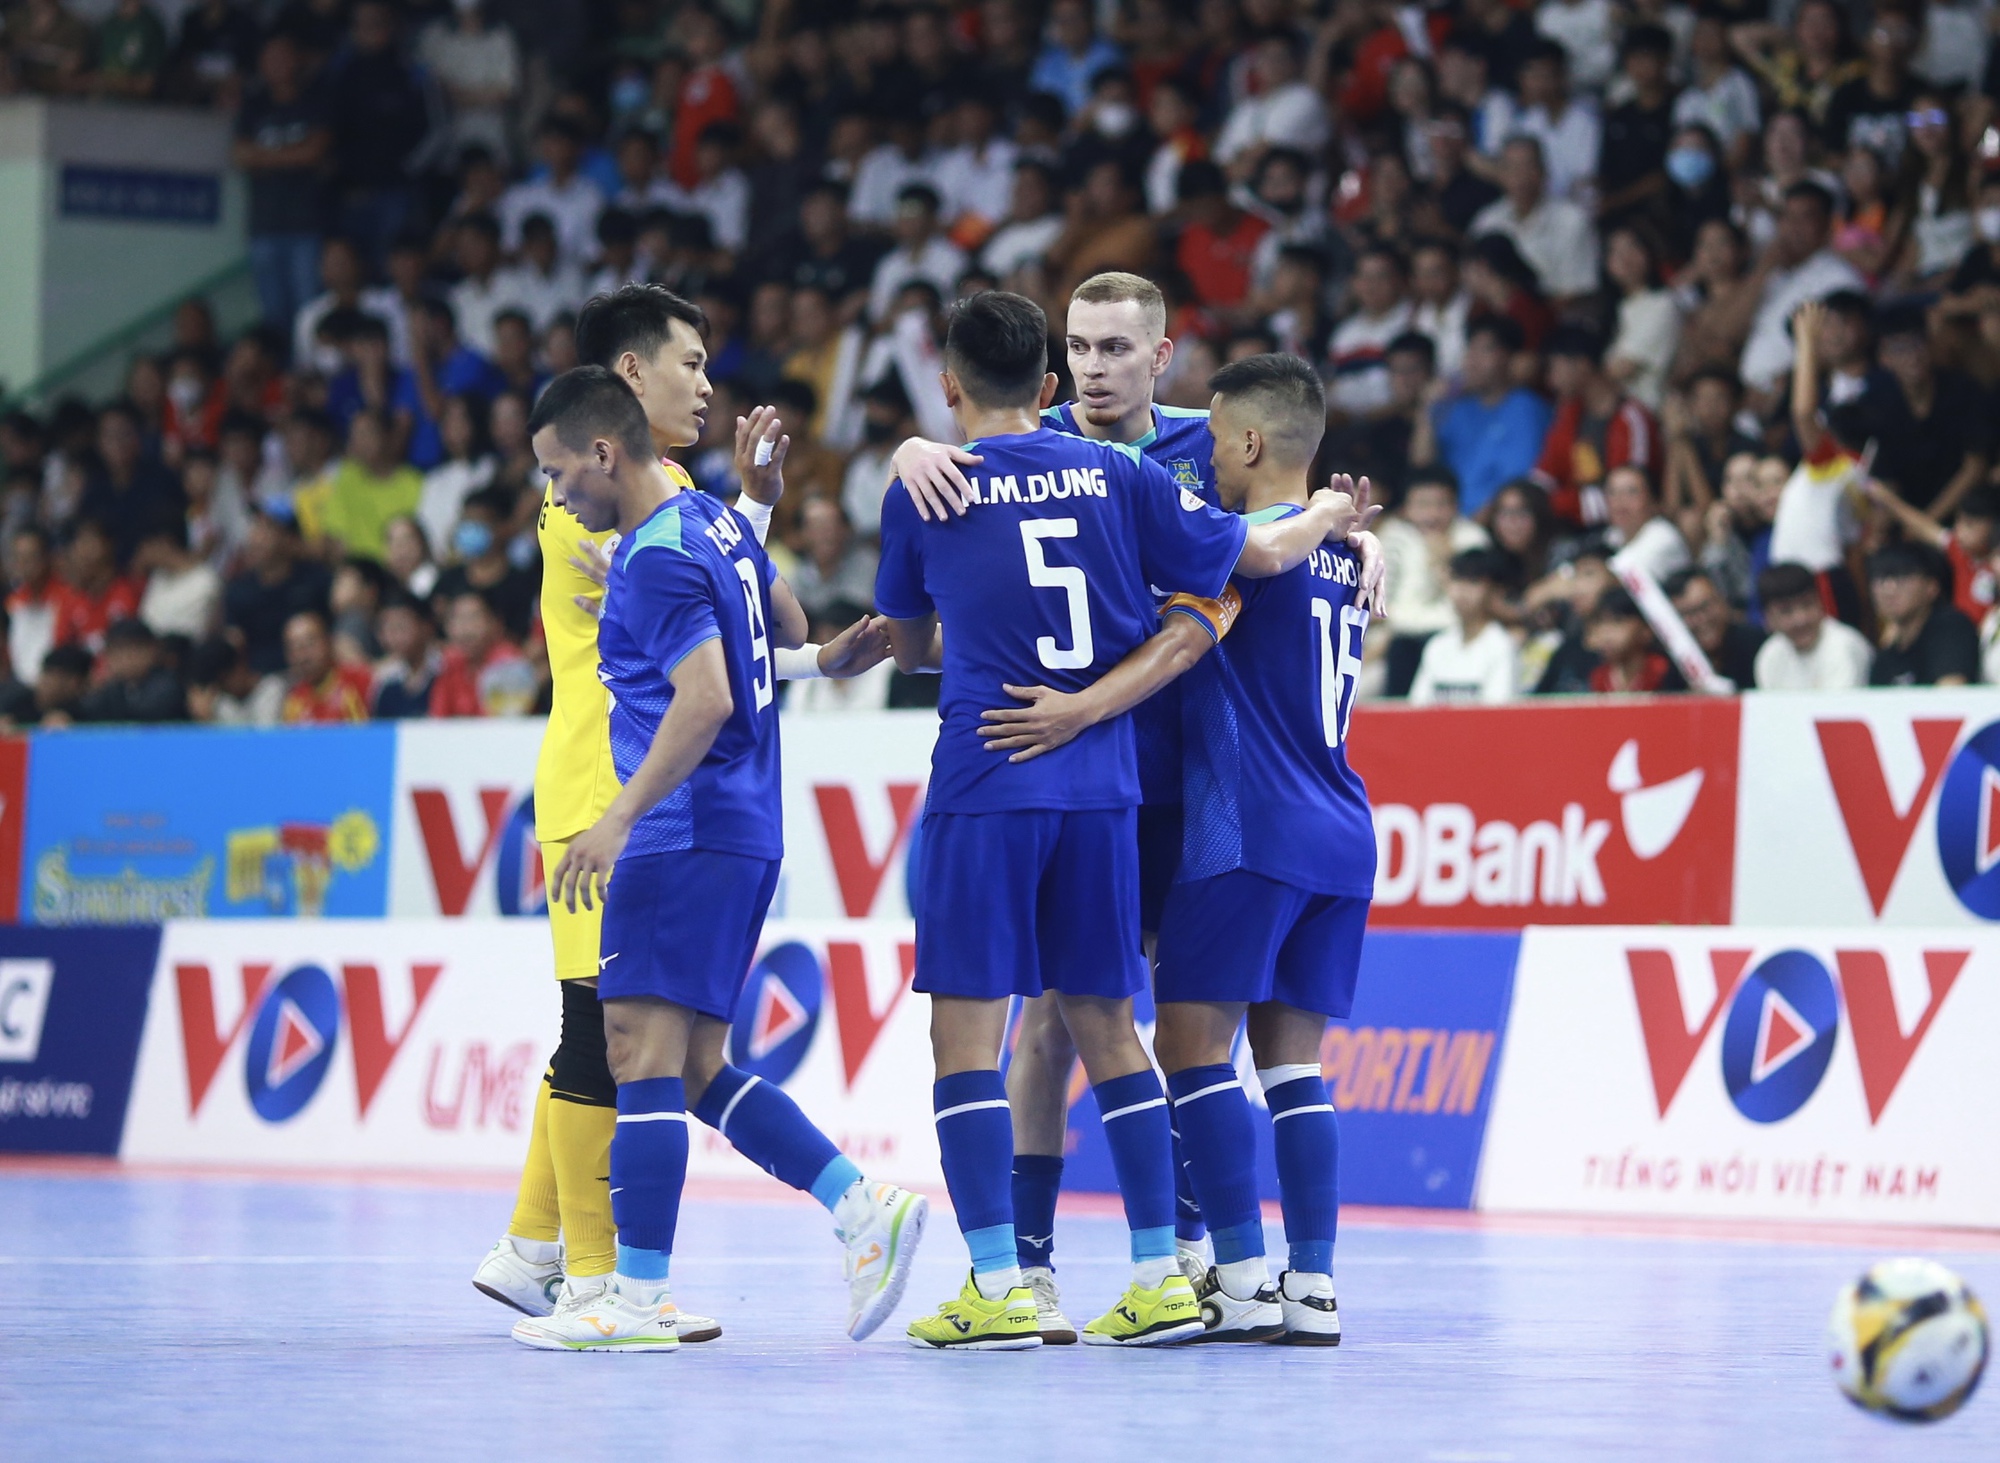 Futsal Cúp quốc gia 2023: Thái Sơn Nam vô địch, hoàn tất cú đúp danh hiệu - Ảnh 4.